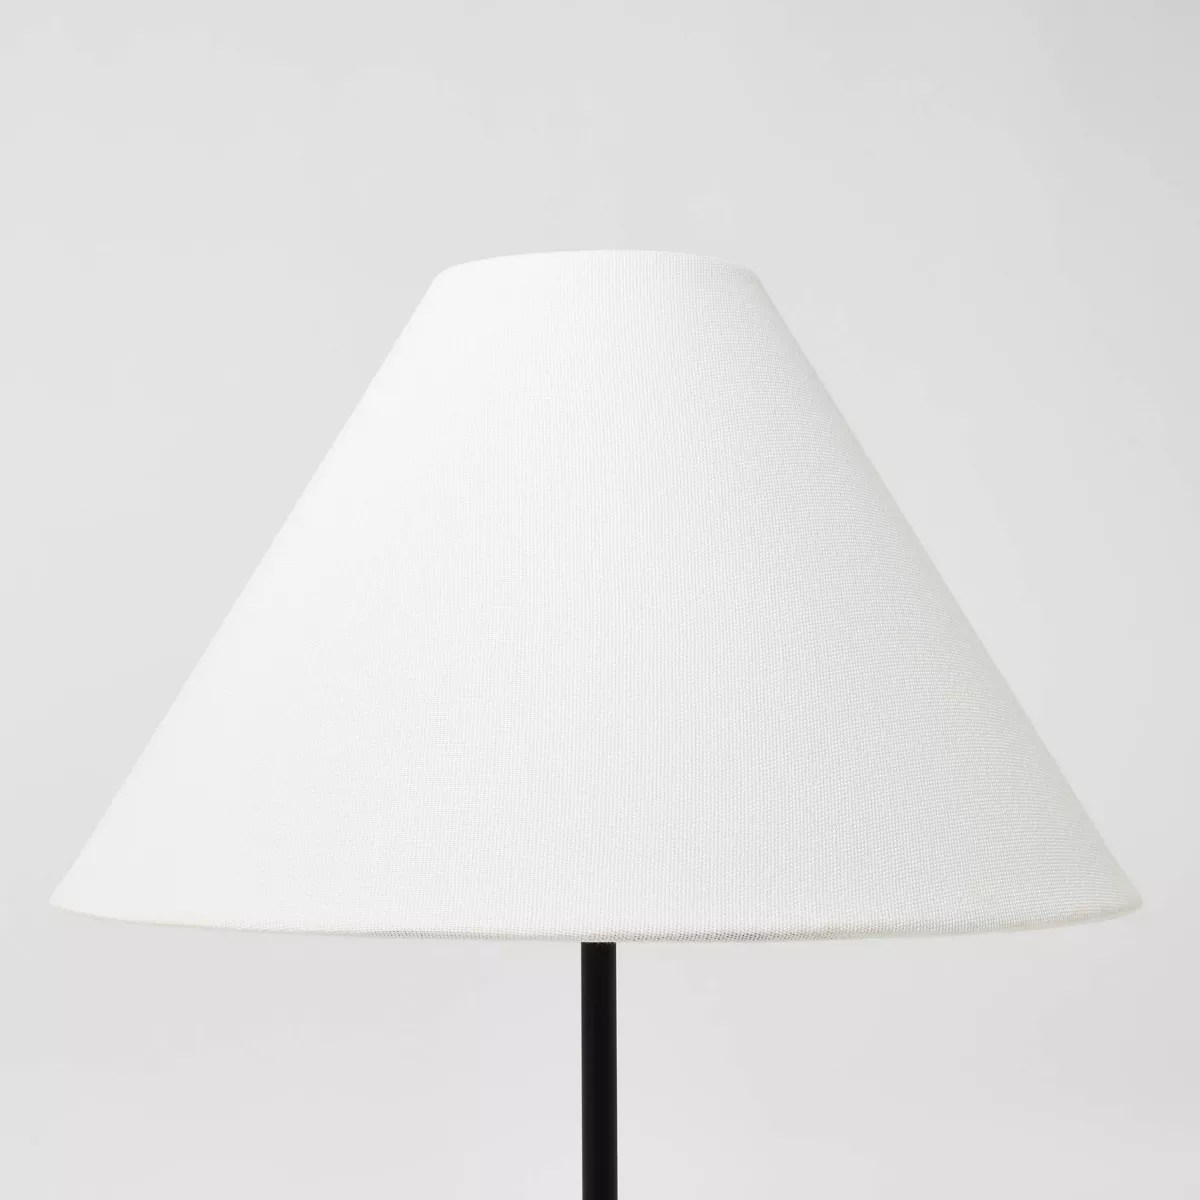 white lamp shade